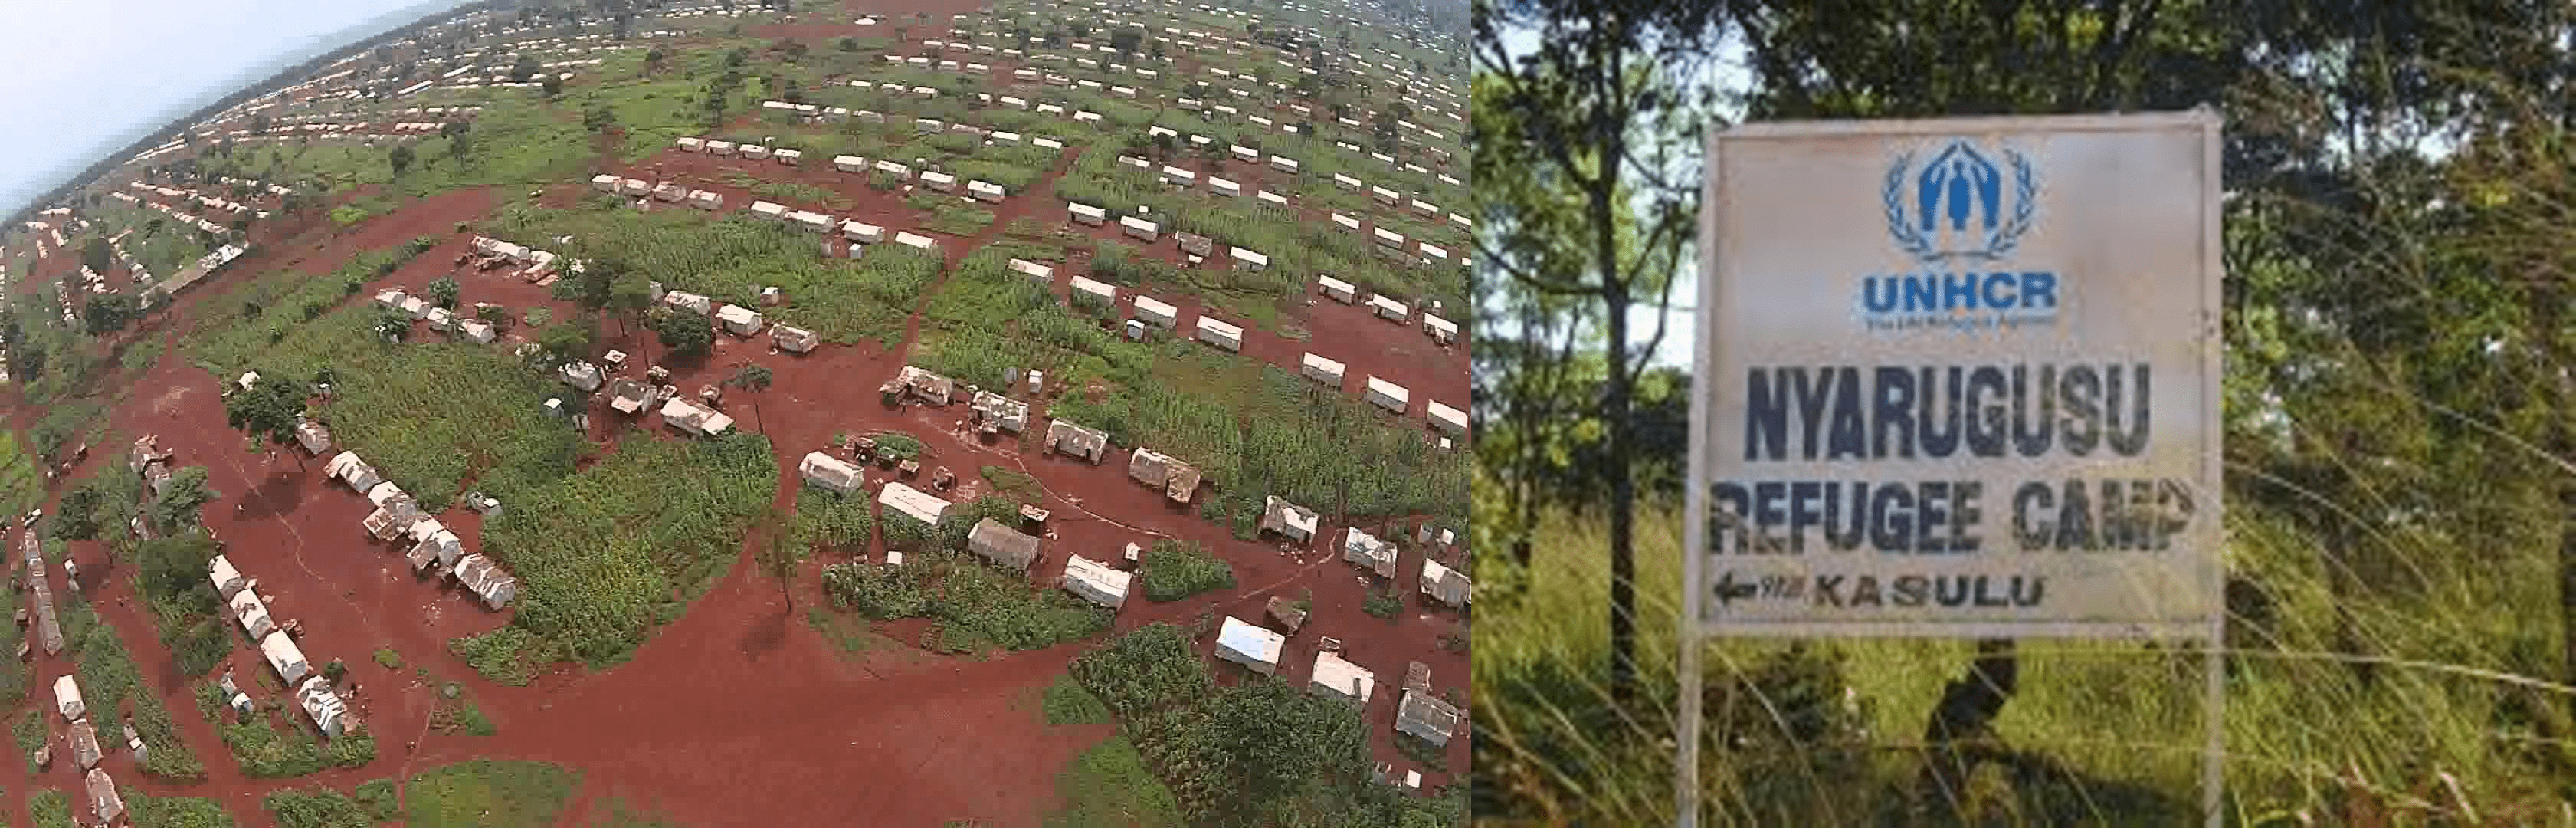 Tanzanie : Les aléas climatiques affectent les réfugiés burundais du camp Nyarugusu